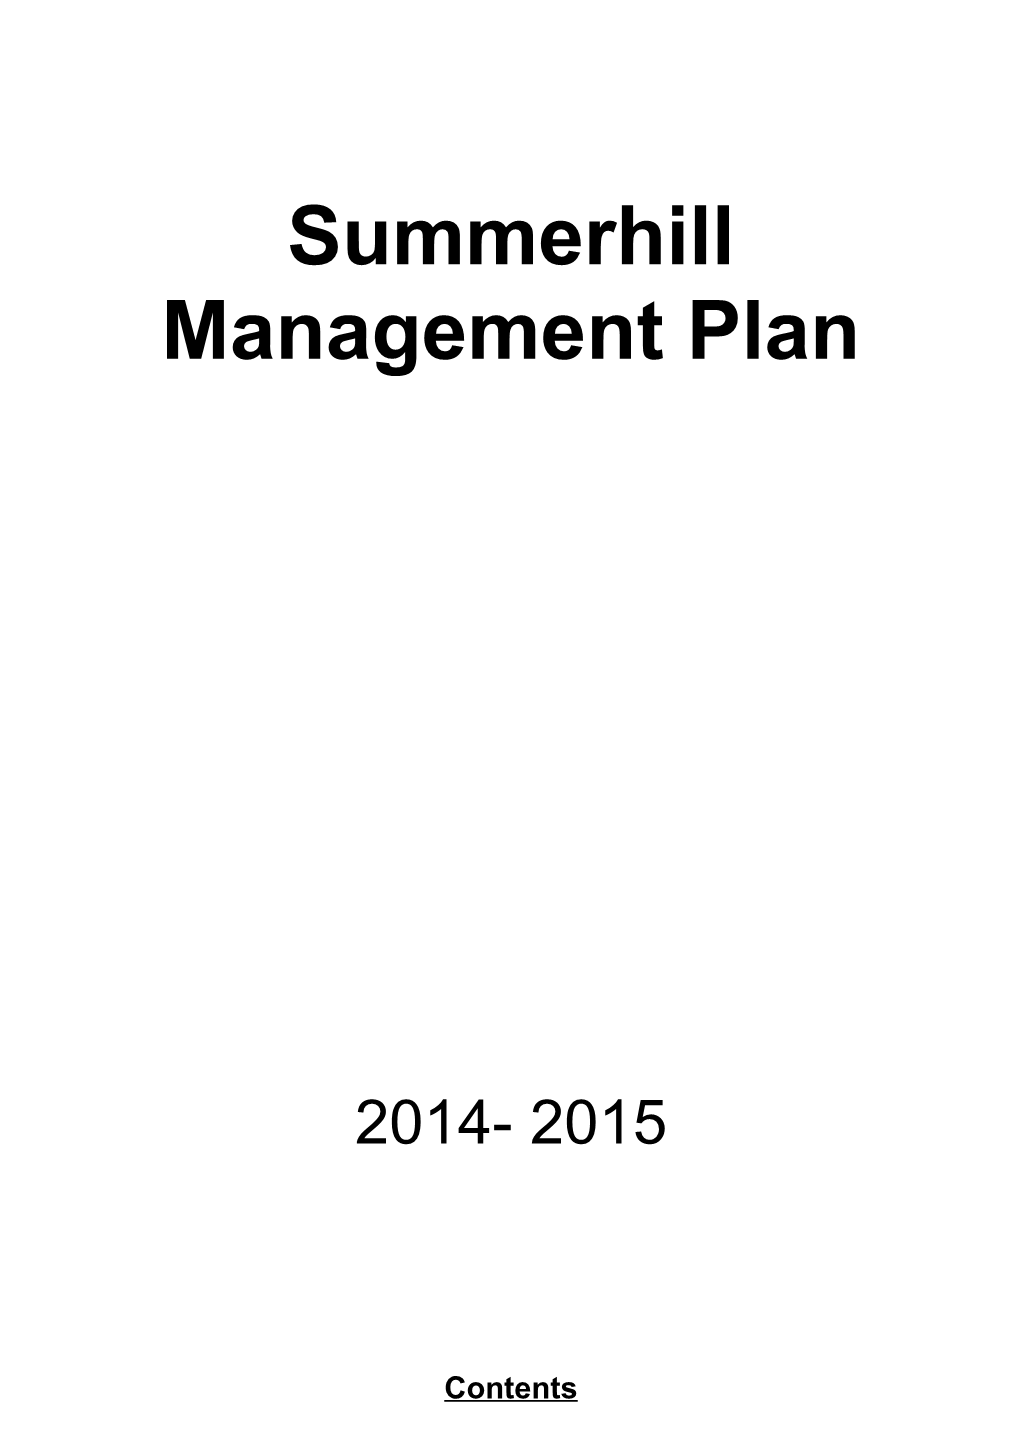 Summerhill Management Plan